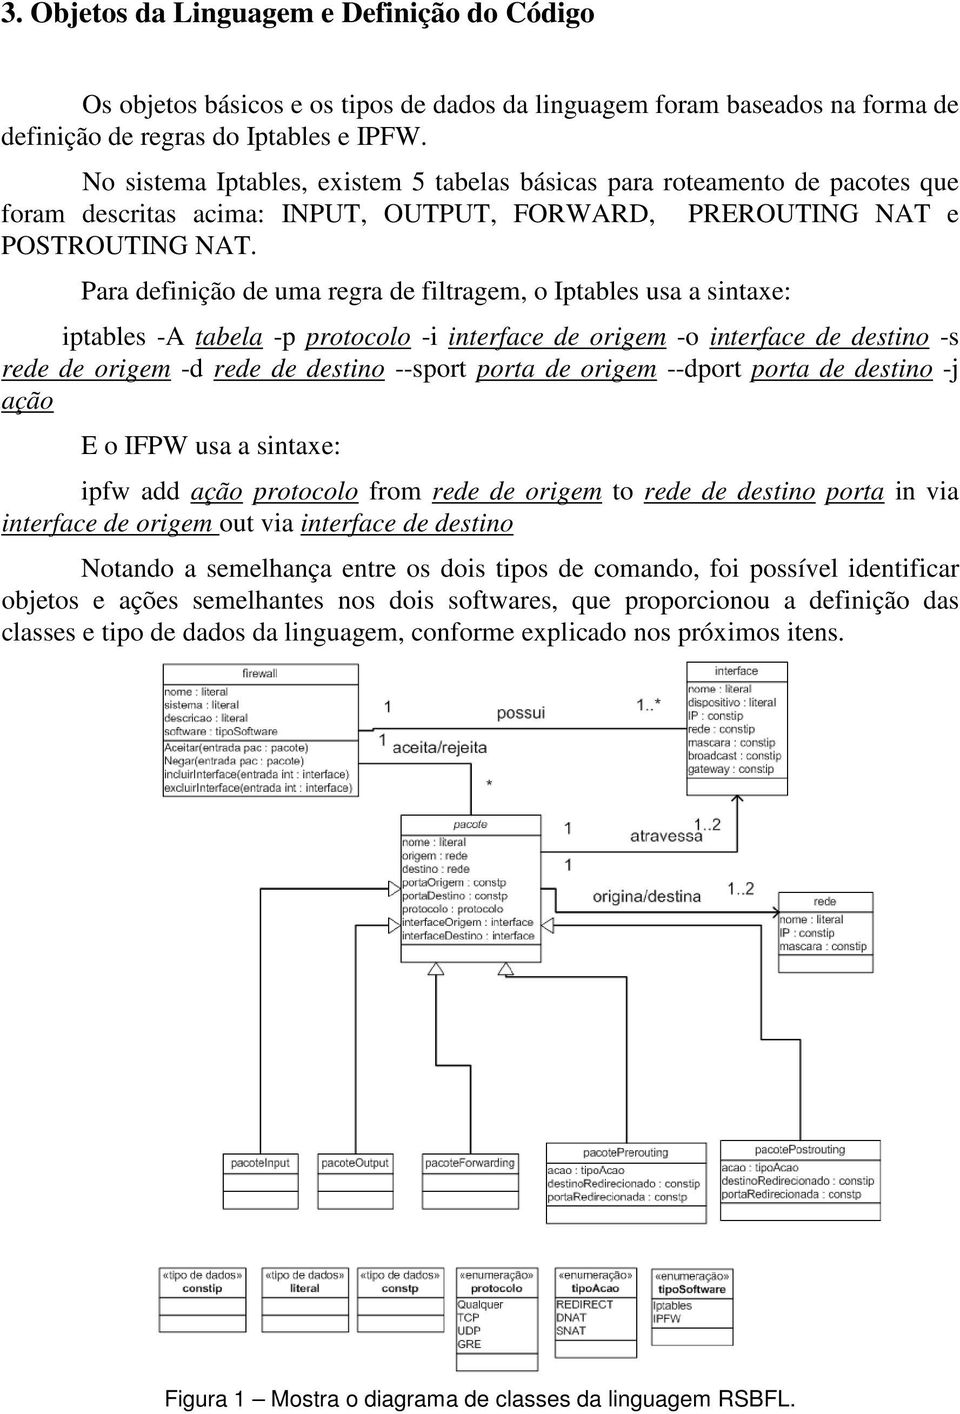 Para definição de uma regra de filtragem, o Iptables usa a sintaxe: iptables -A tabela -p protocolo -i interface de origem -o interface de destino -s rede de origem -d rede de destino --sport porta